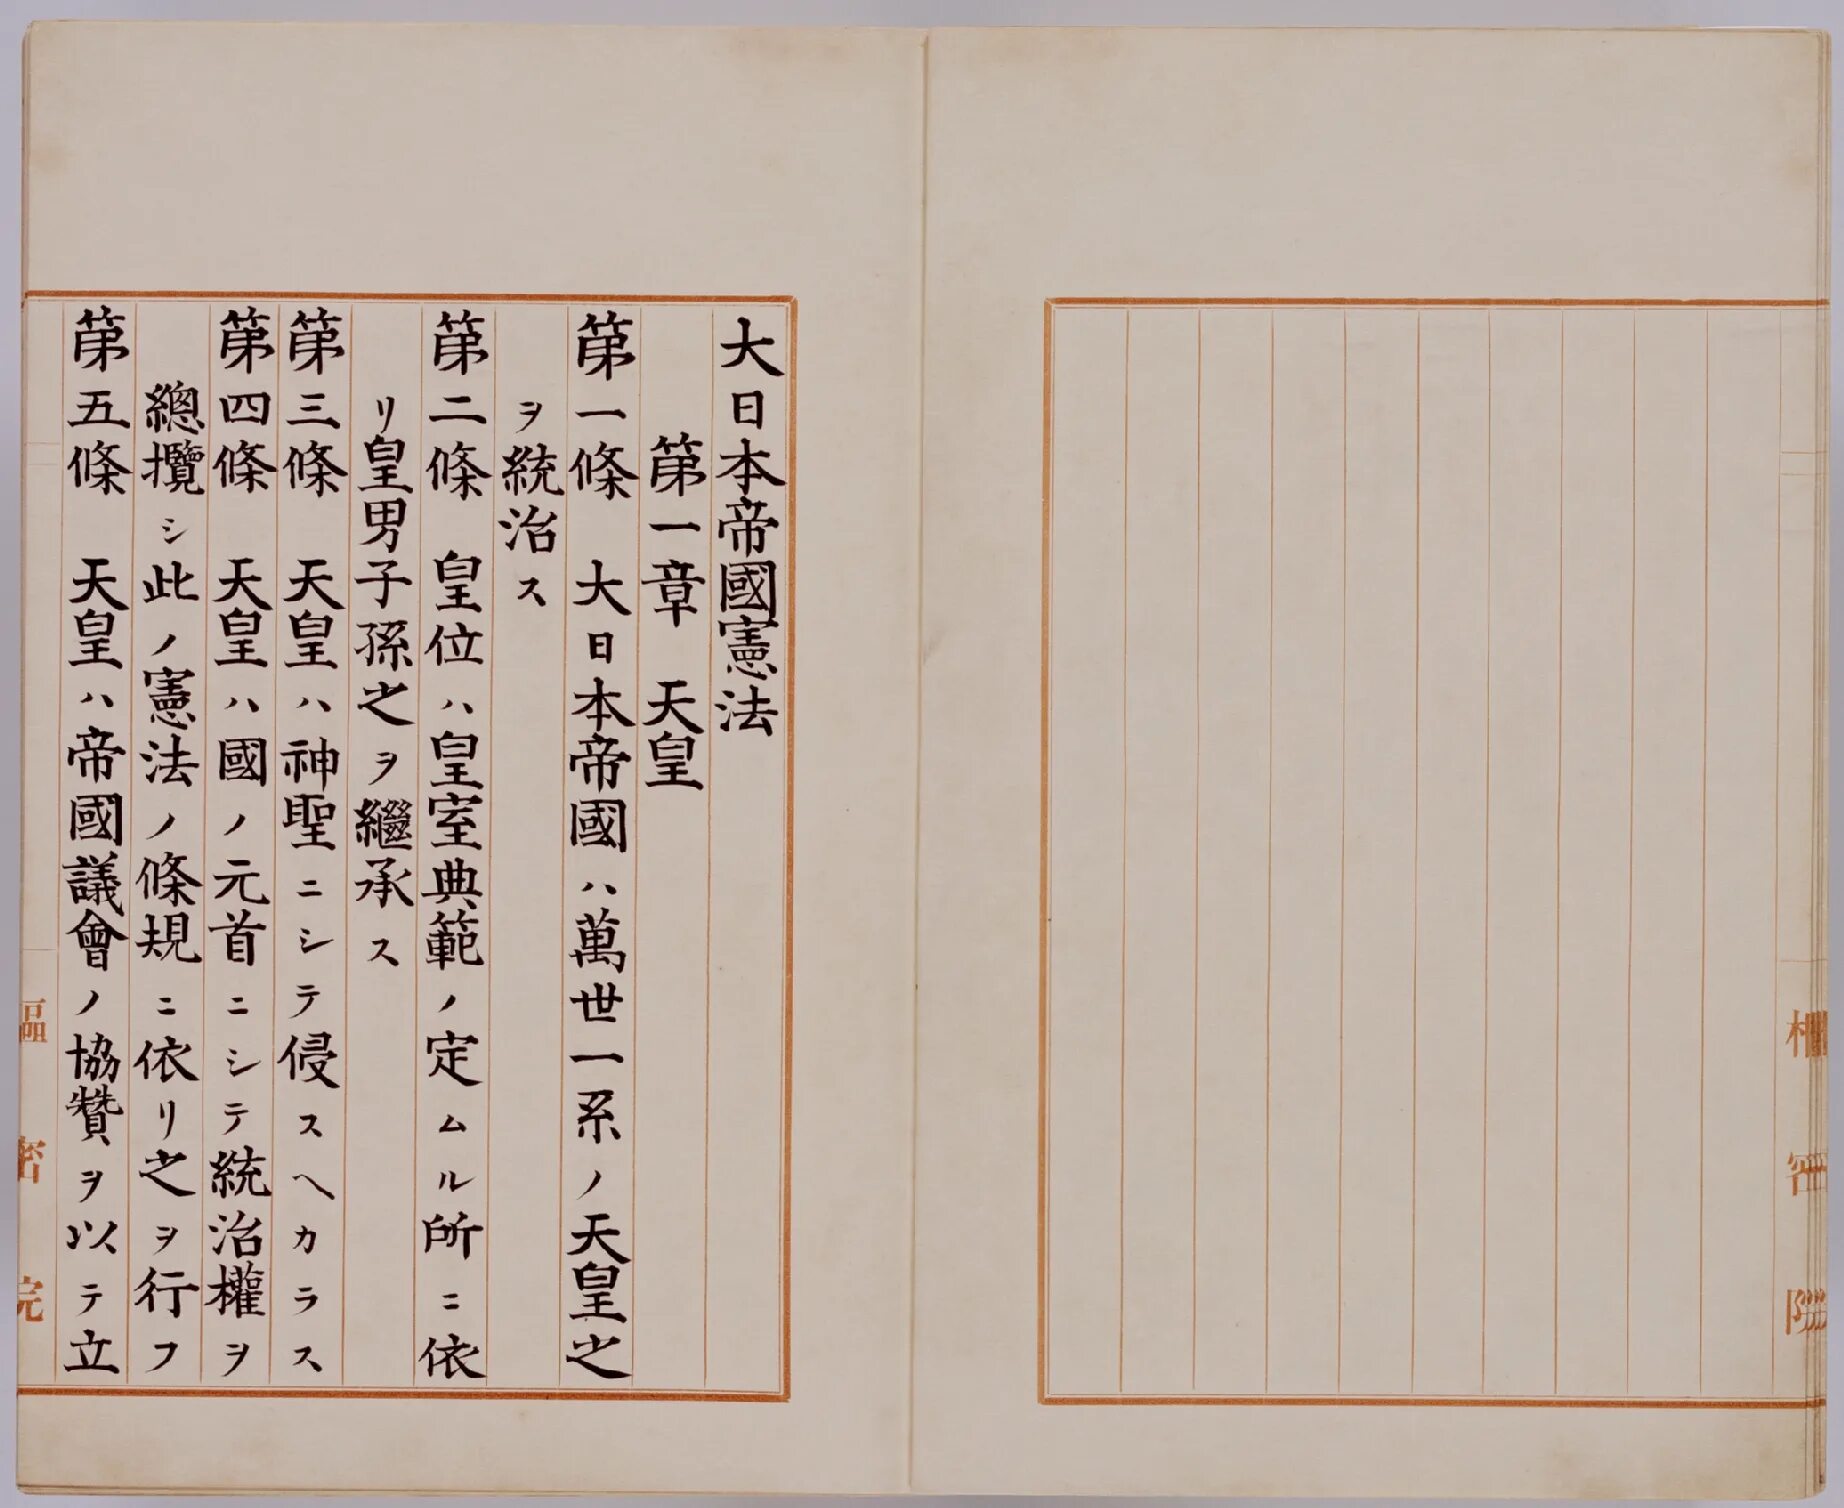 Японская конституция 1889. Конституция японской империи 1889. Конституция Японии 1889 года. Конституция Японии 1947. Конституция Мэйдзи 1889.